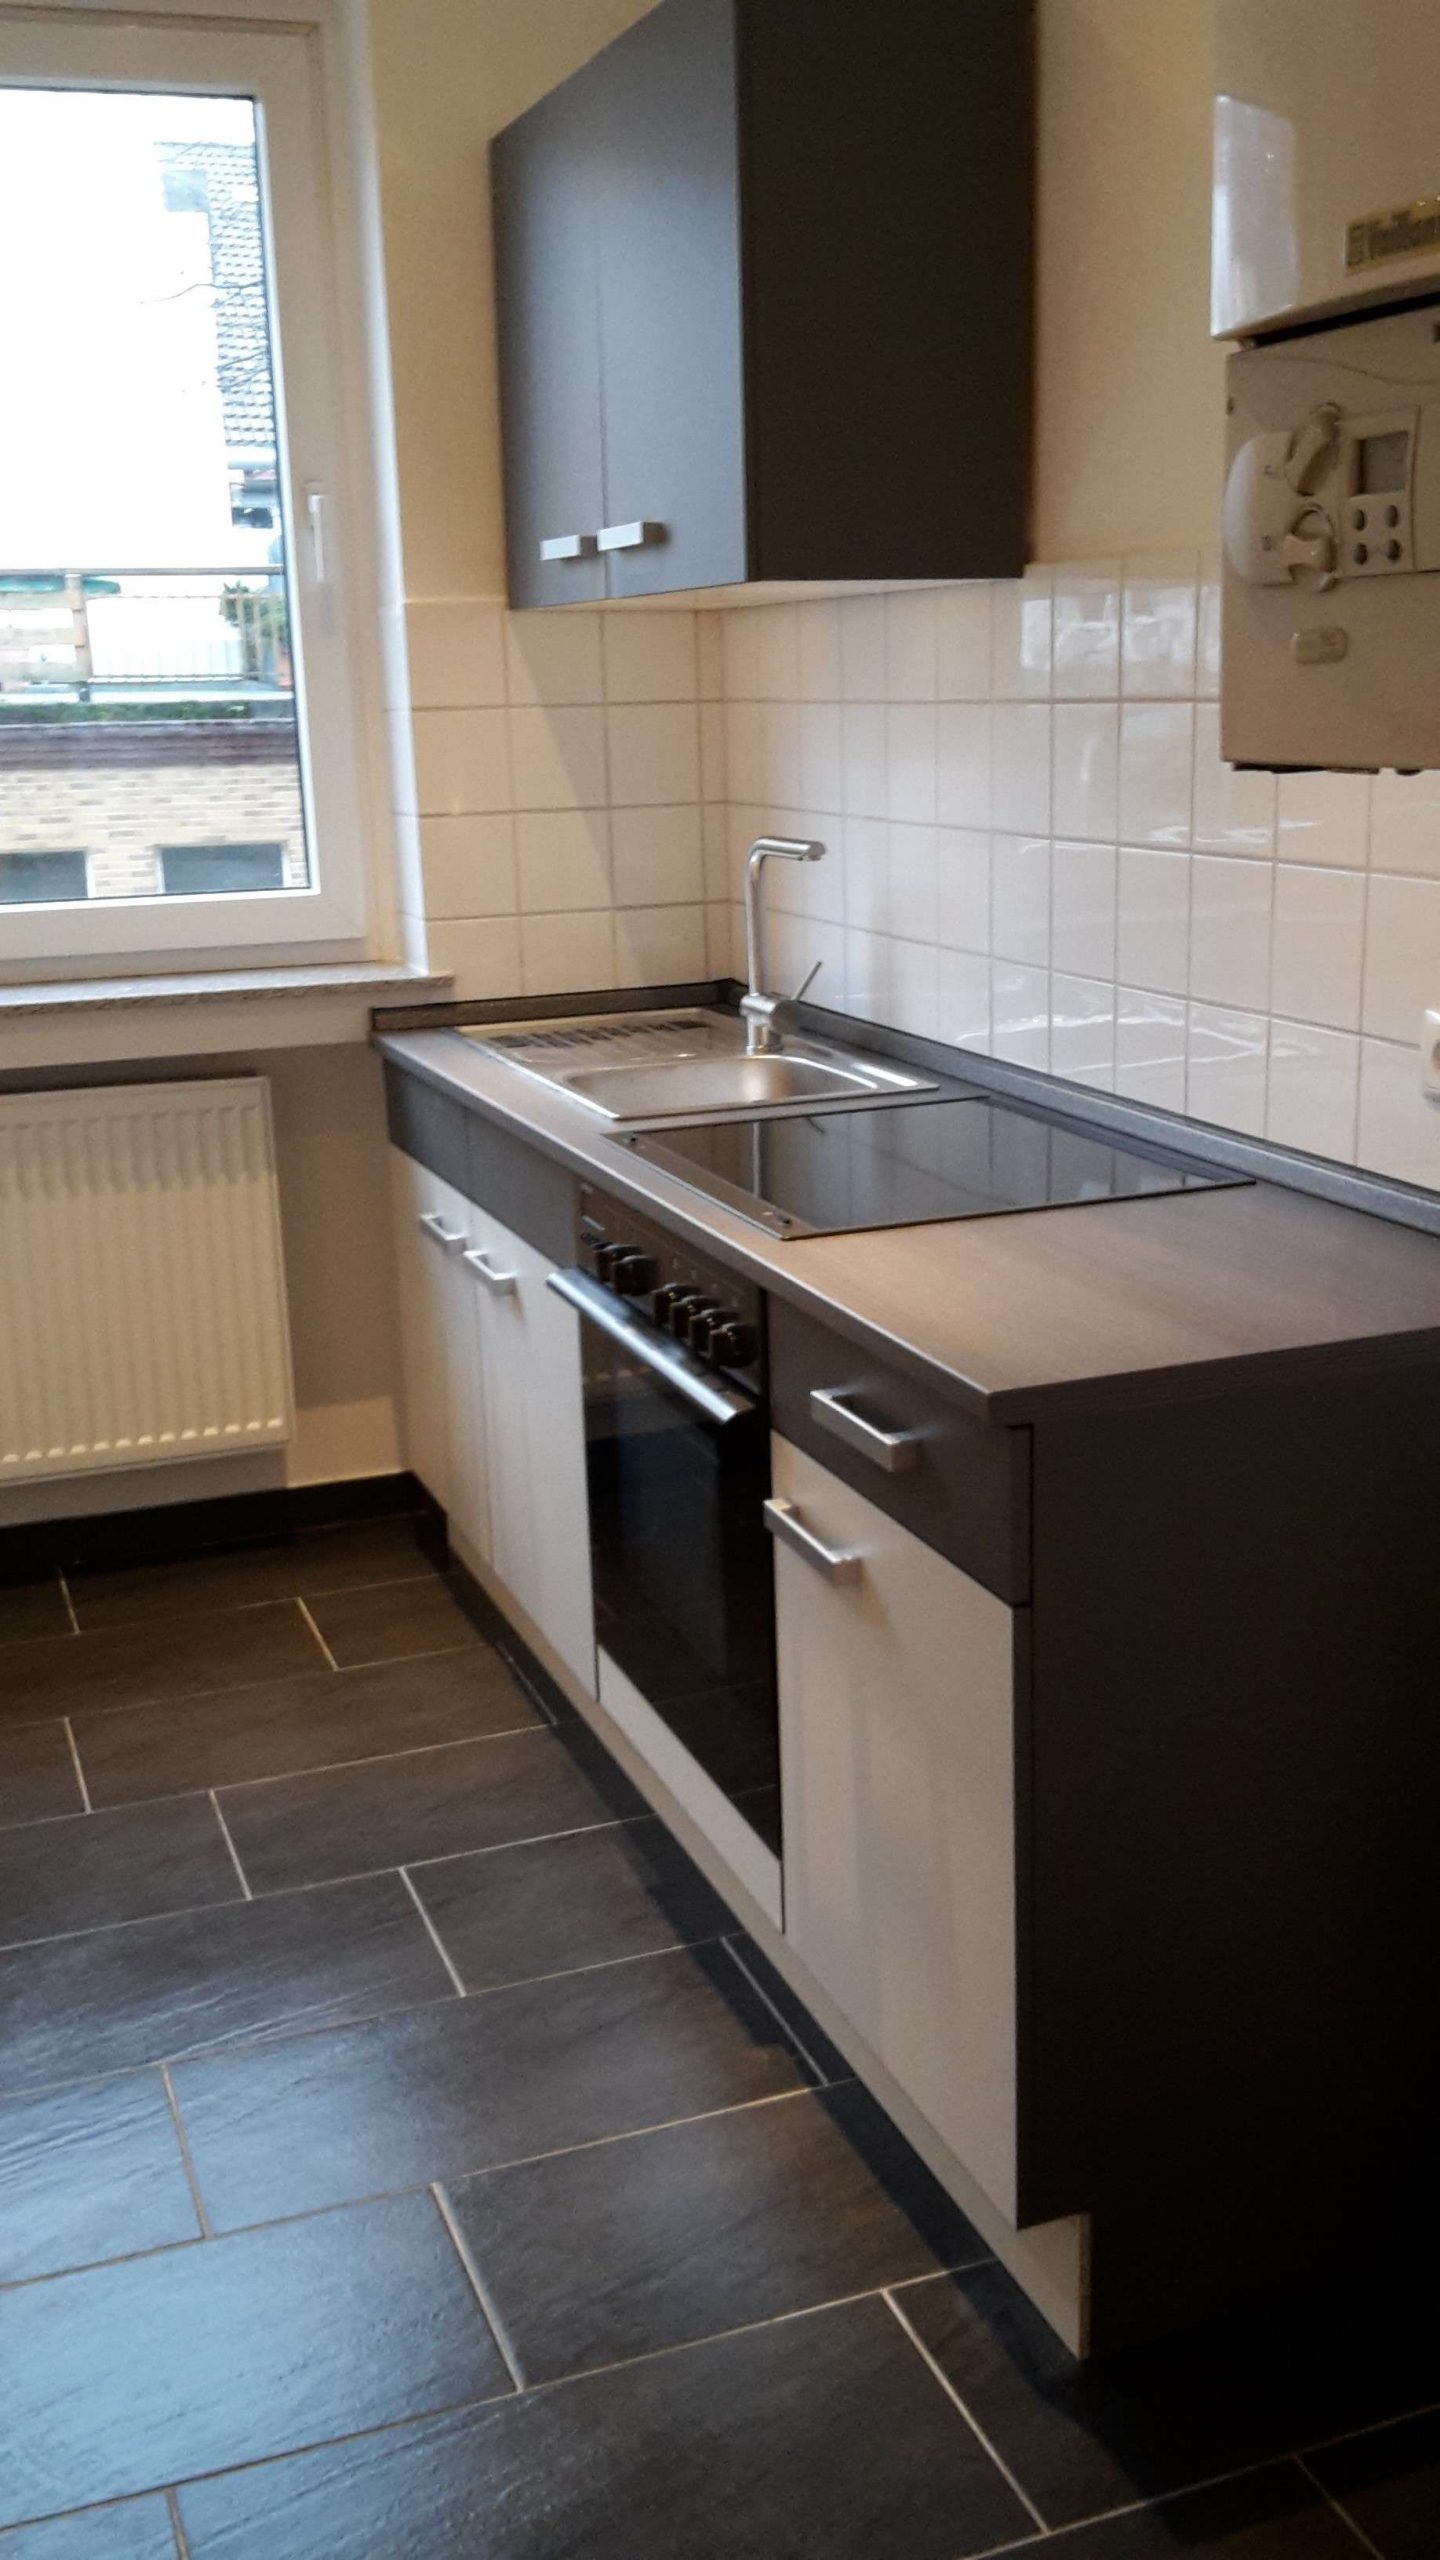 Top-renovierte Single-Wohnung in ruhiger zentraler Lage, 31134 Hildesheim, Etagenwohnung